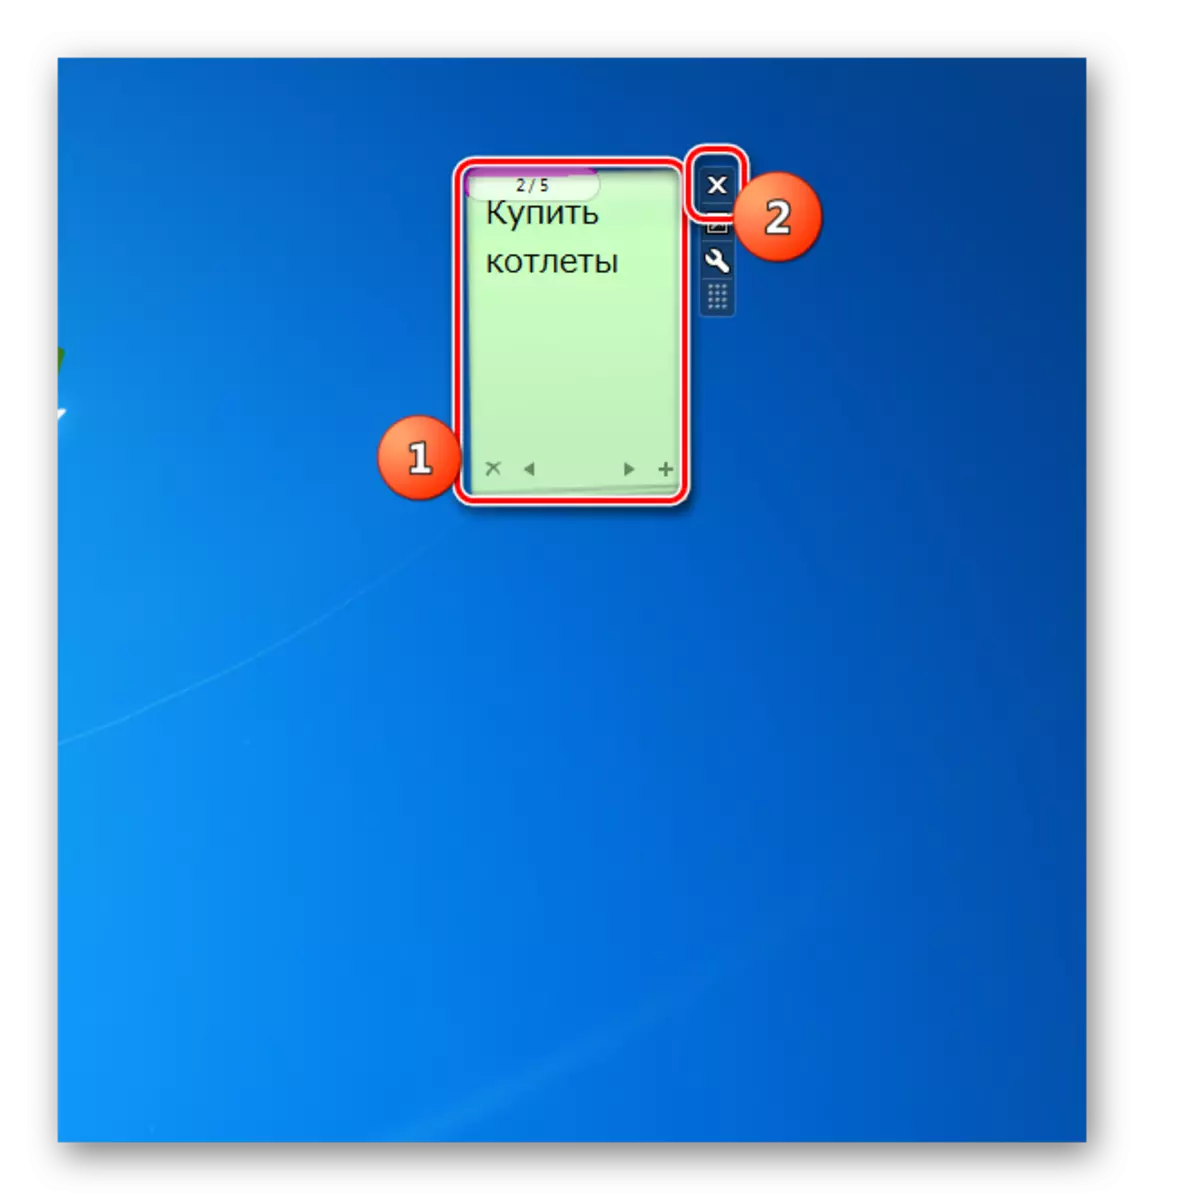 بستن یادداشت های دیگر رابط گجت گجت در دسکتاپ در ویندوز 7